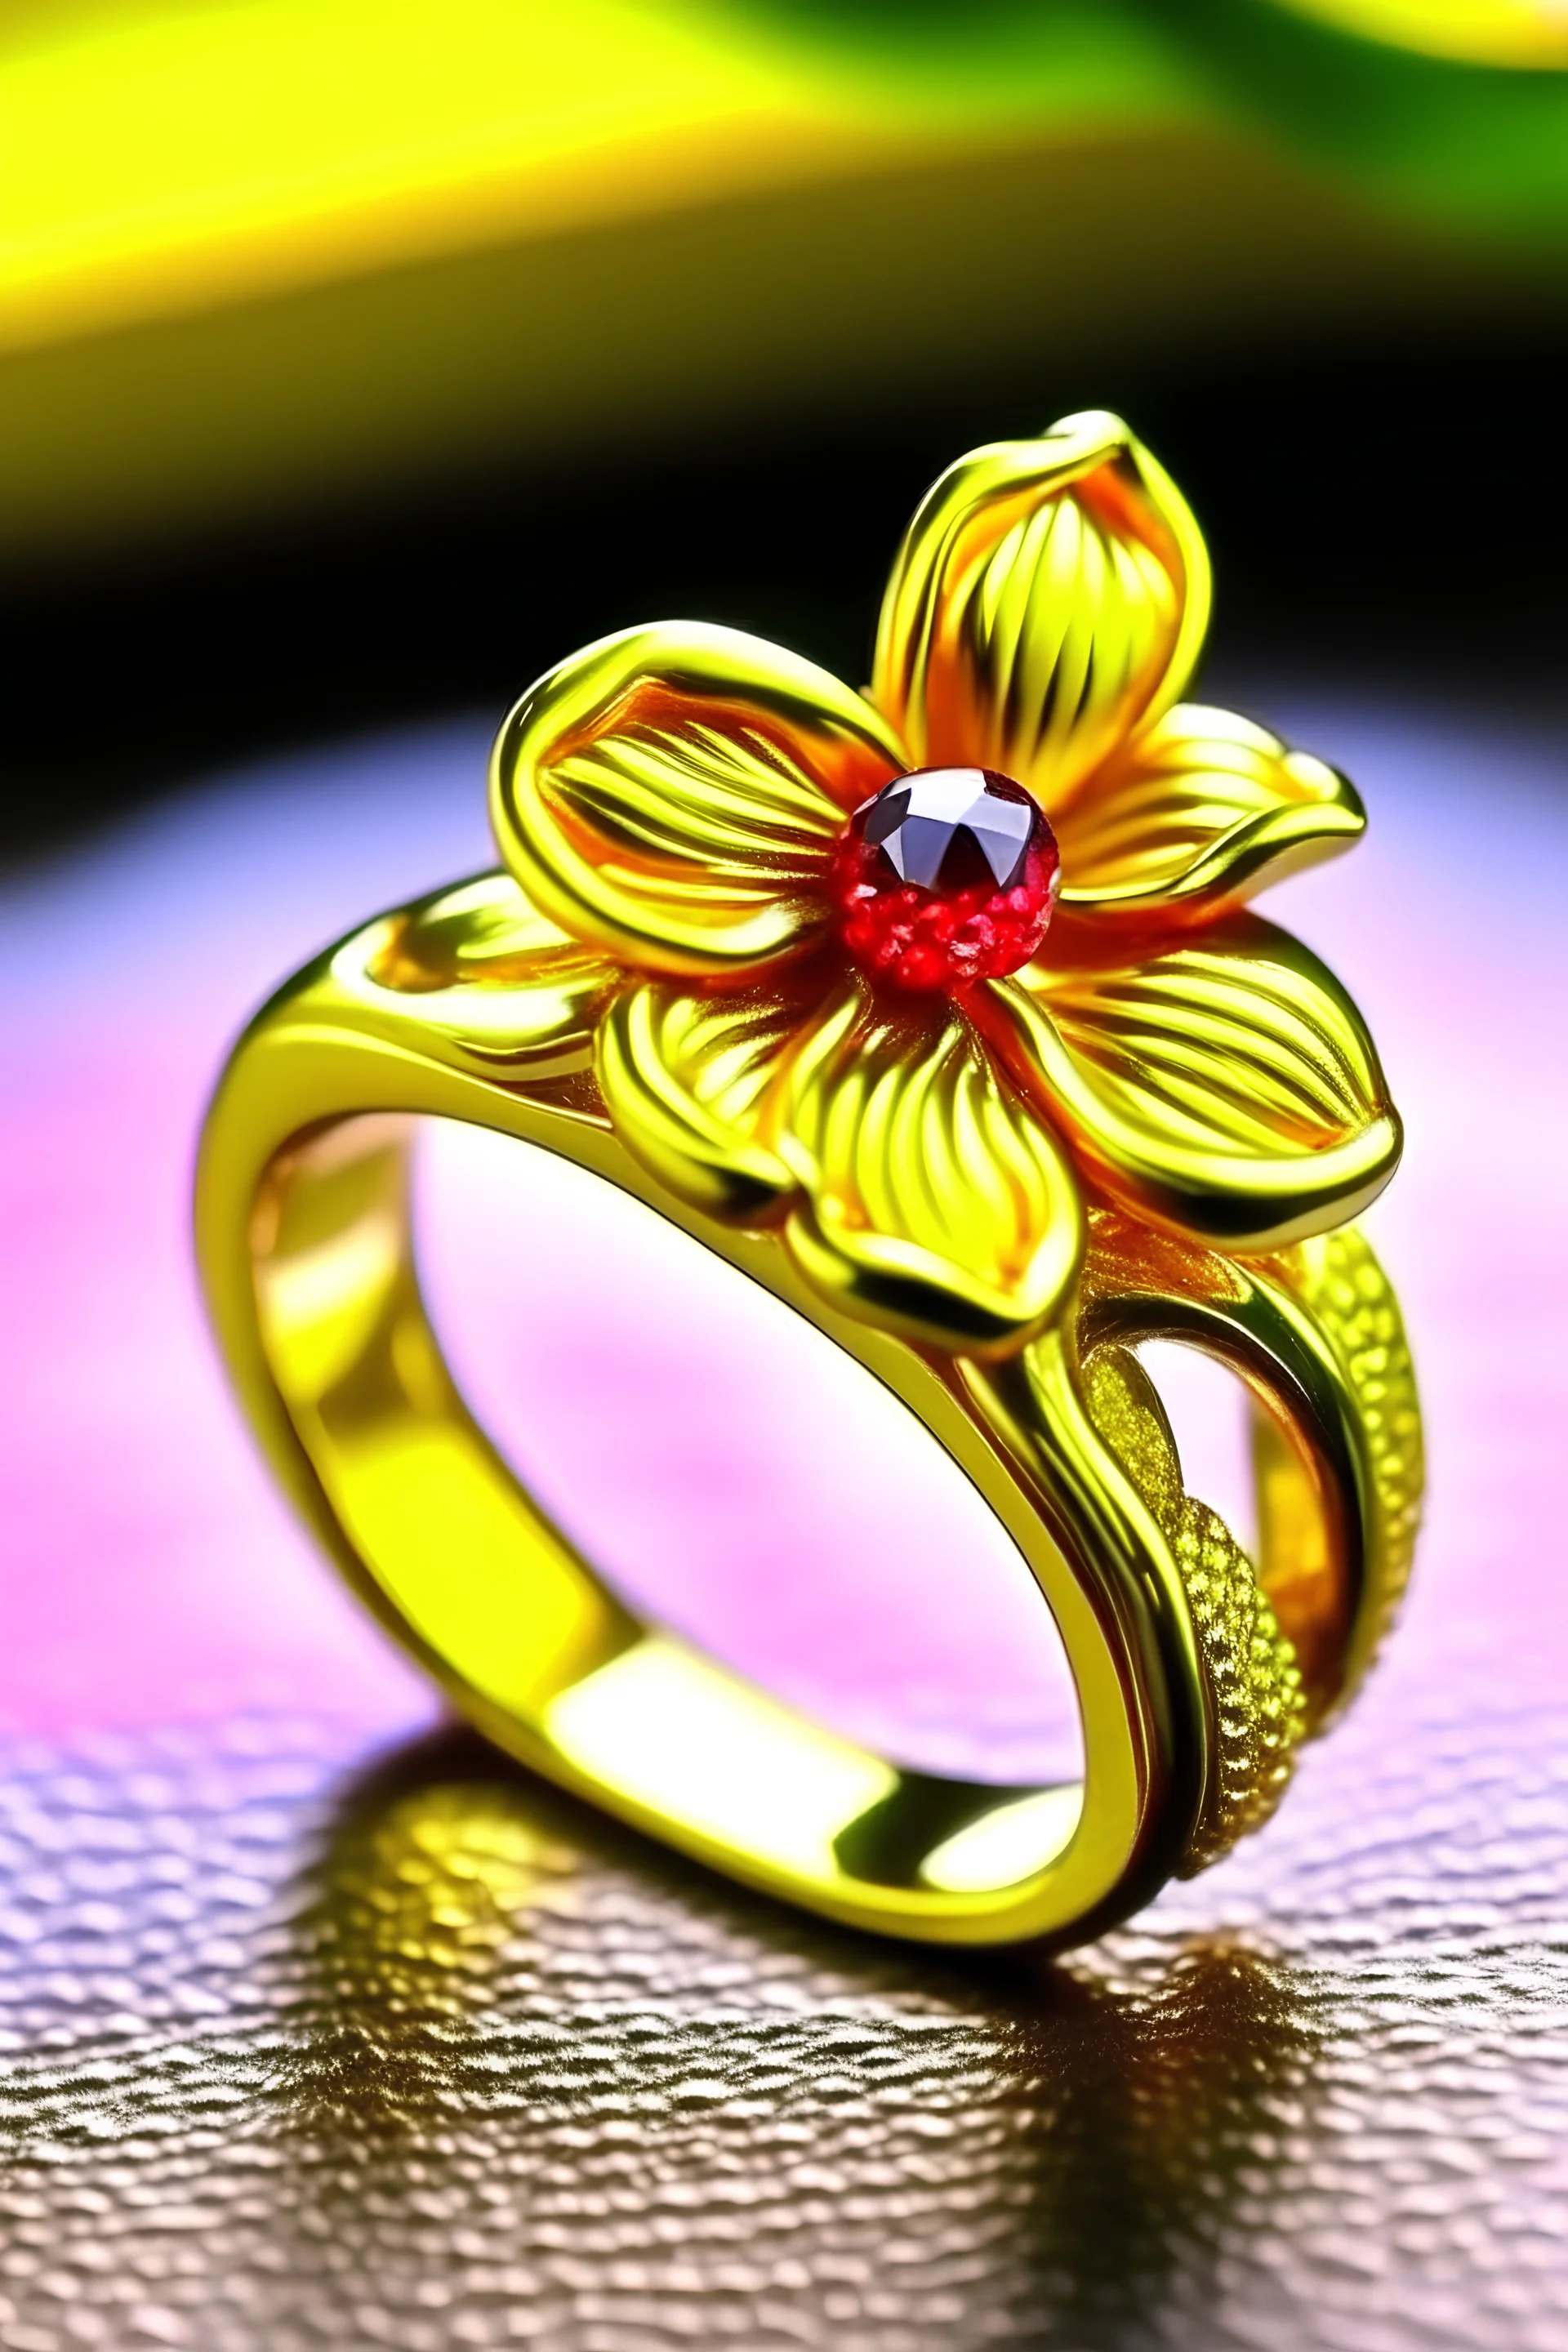 Gold Ring Design: महिलाओं को बहुत पसंद आ रही है ये सोने की अंगूठियां, आपकी  खूबसूरती में लगा देंगे चार चाँद| Ring Design For Women | Ring Design -  Prakash News